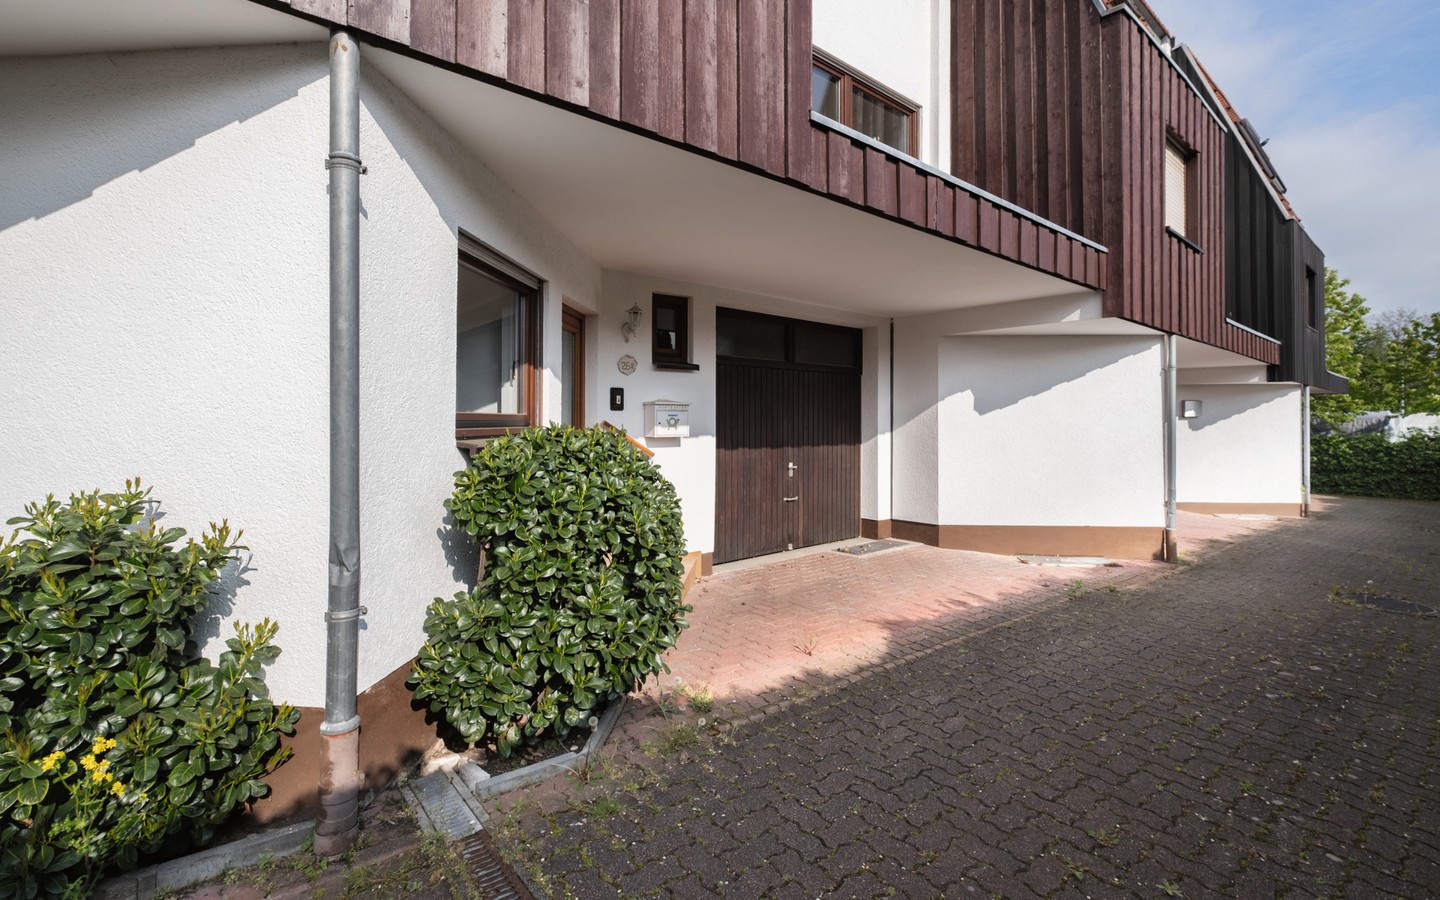 Hauszugang - Ihr neues Familiendomizil in Wiesloch: großzügiges RMH mit findiger Architektur und viel Platz